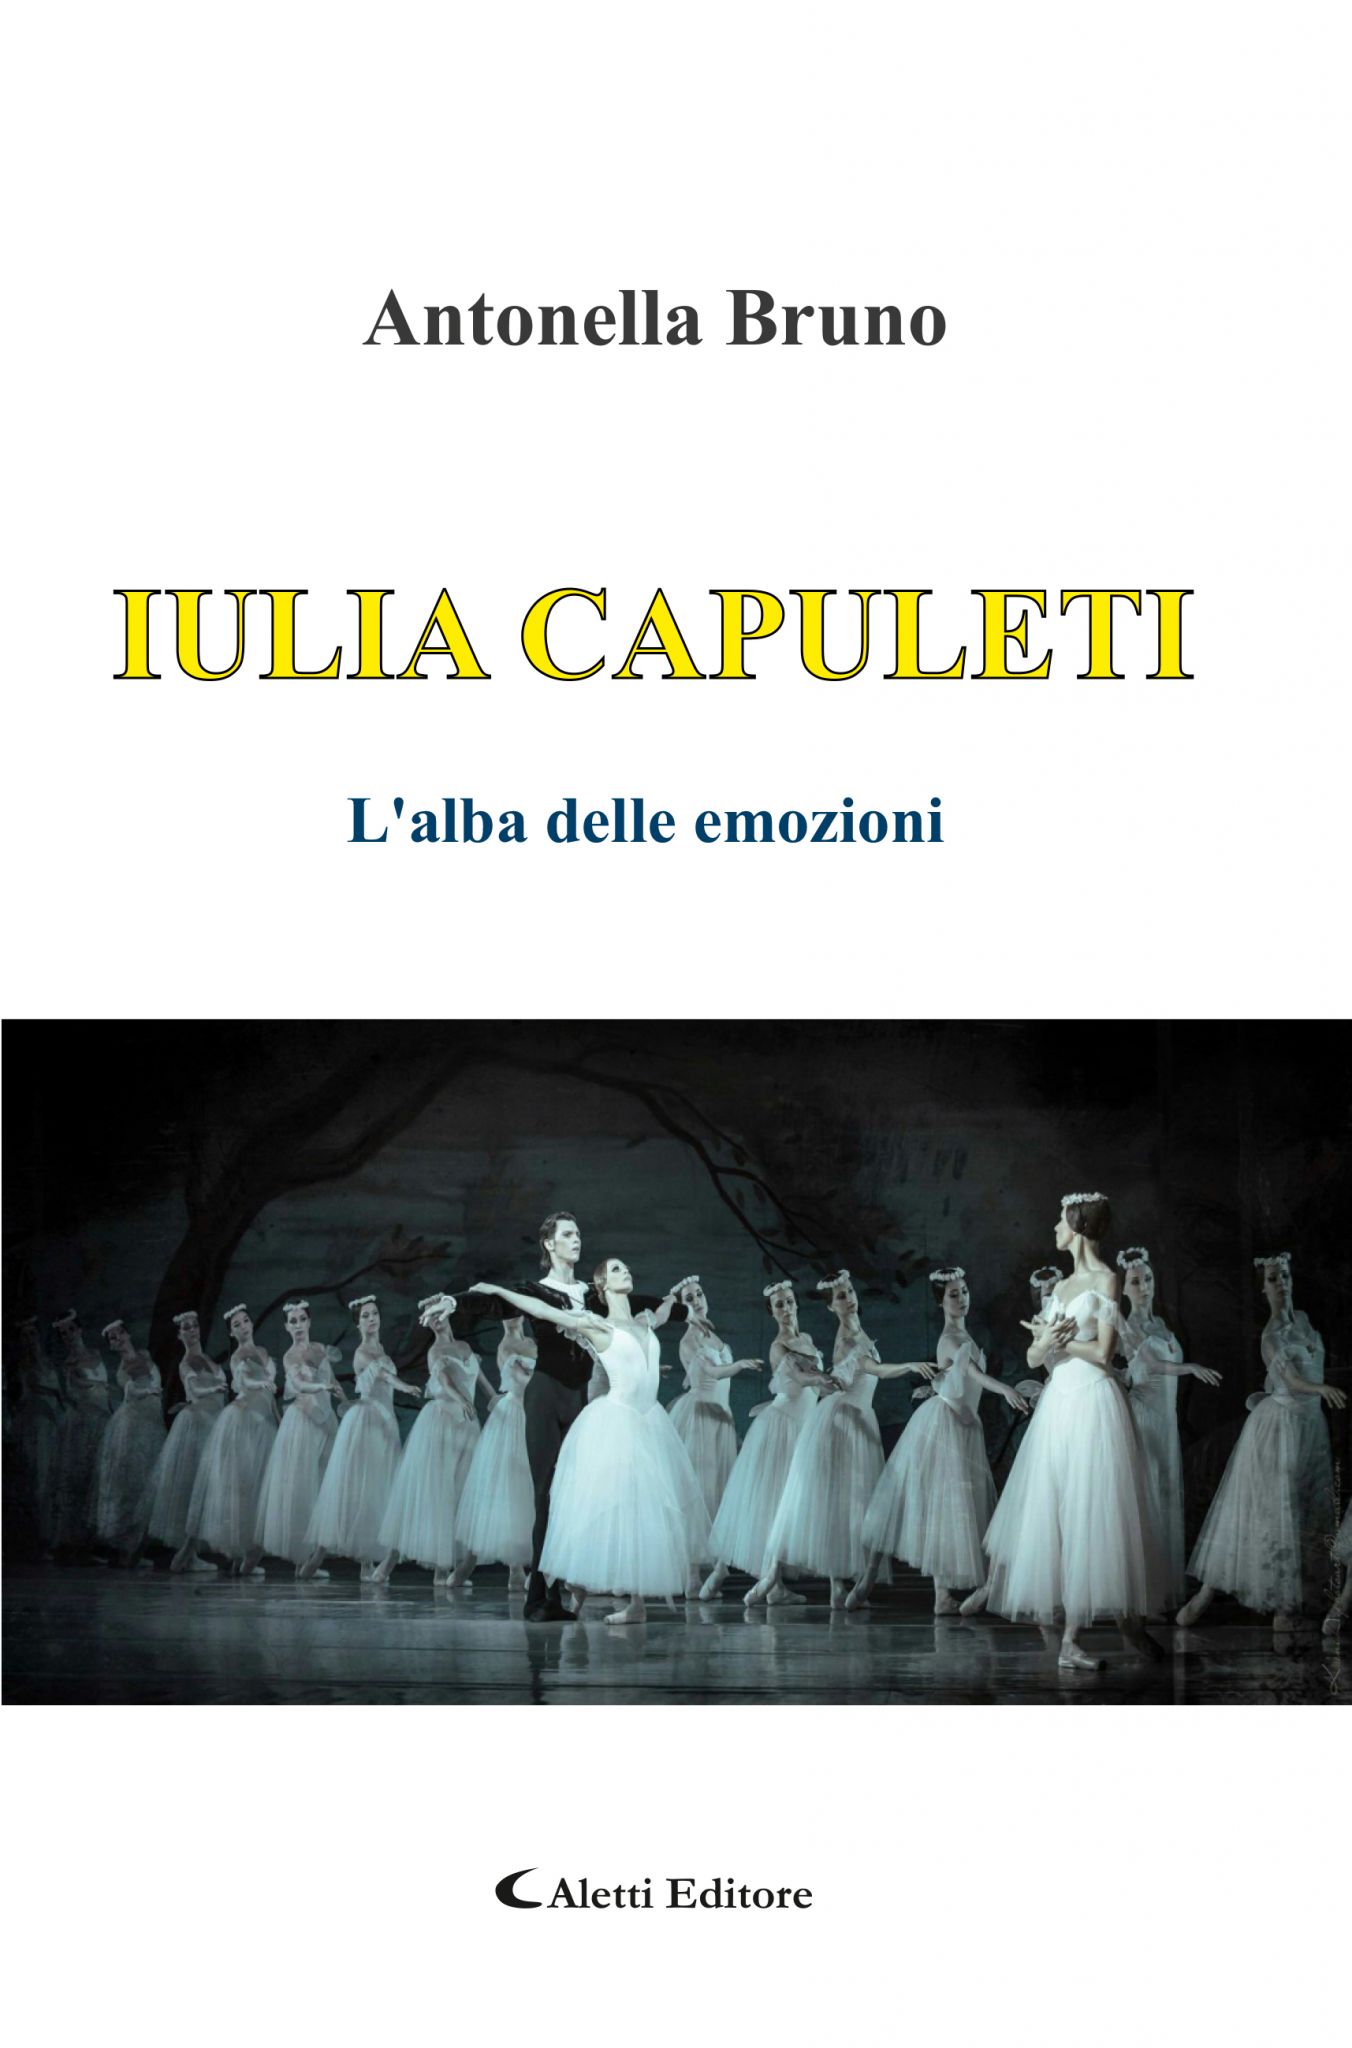 ‘IULIA CAPULETI. L’alba delle emozioni’, presentazione del romanzo di Antonella Bruno ad Avellino